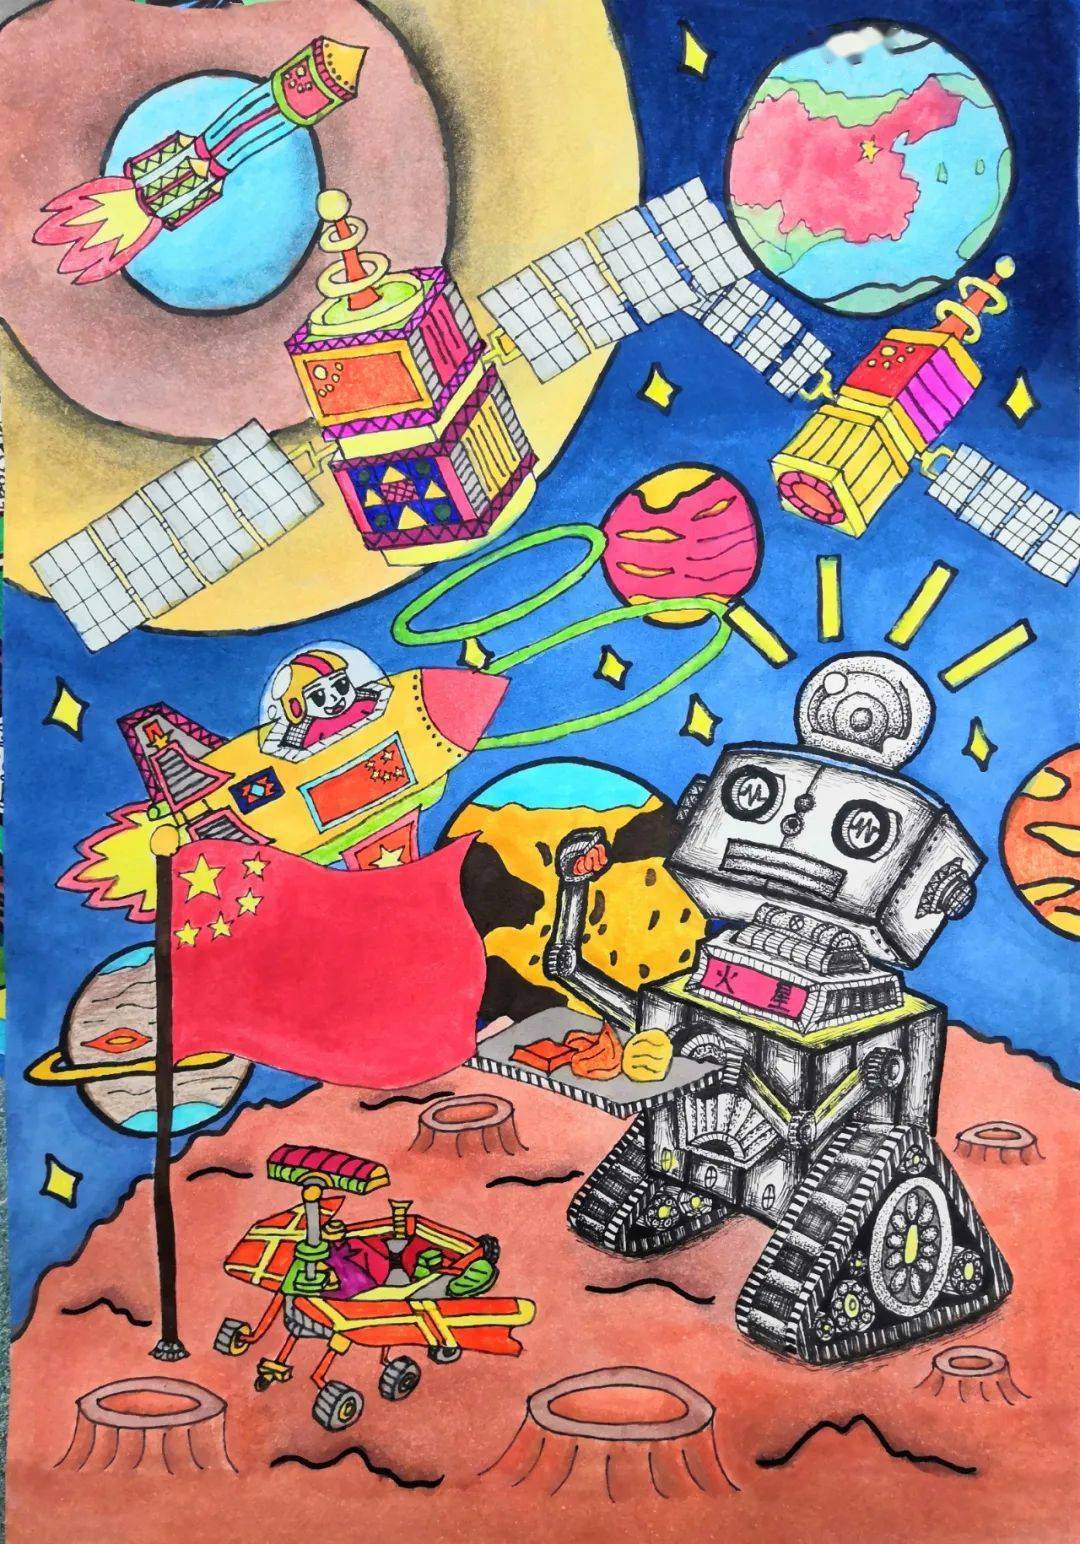 我校七年级,八年级学生进行了科幻画的创作活动,孩子们的想象和绘画